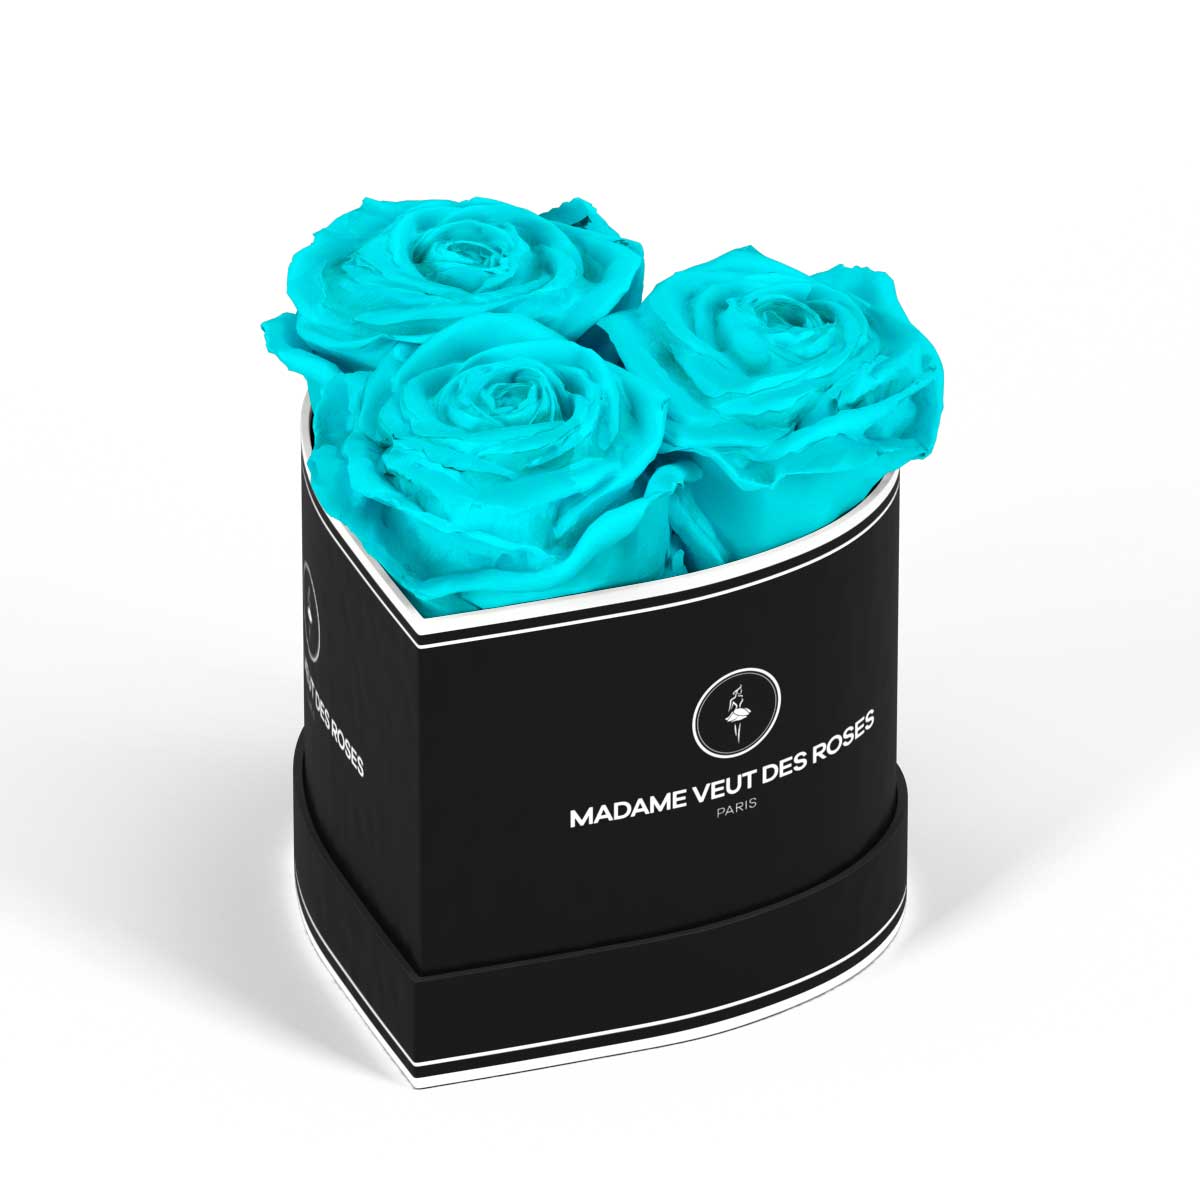 Relaxdays Boîte à roses, 18 roses, Bac à roses noir, forme en cœur,  conservable 10 ans, turquoise